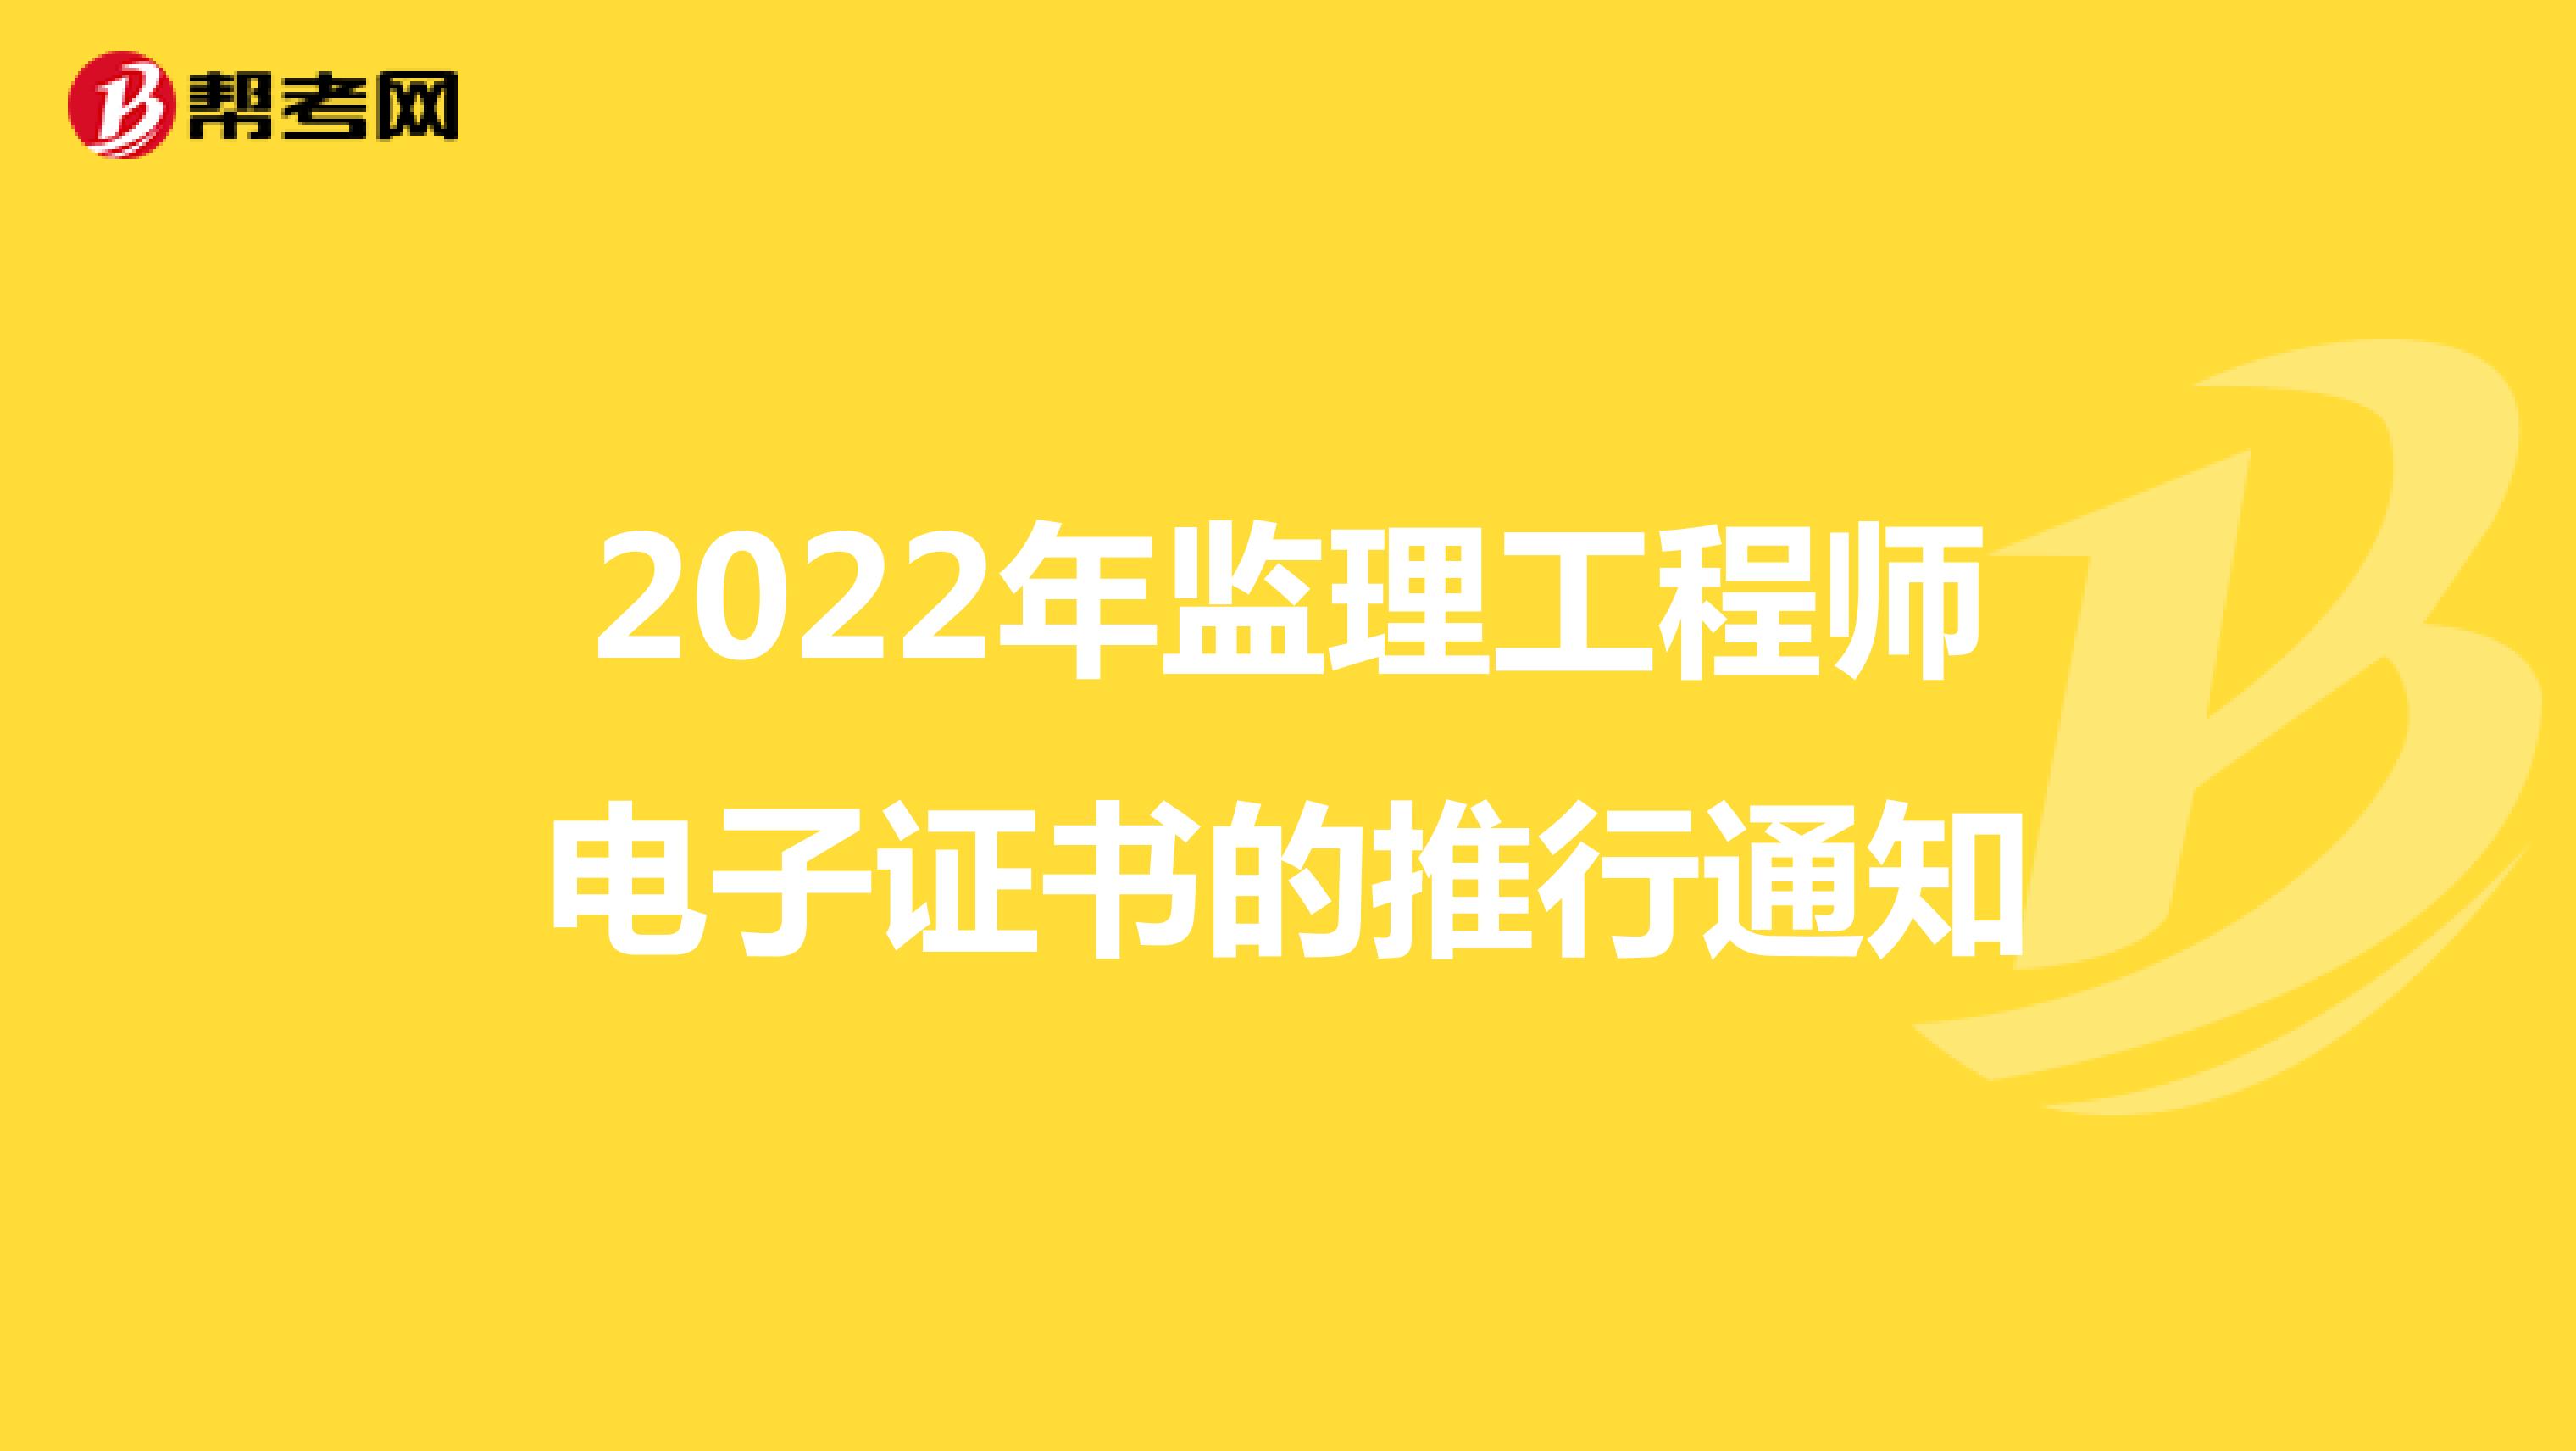 2022年监理工程师电子证书的推行通知